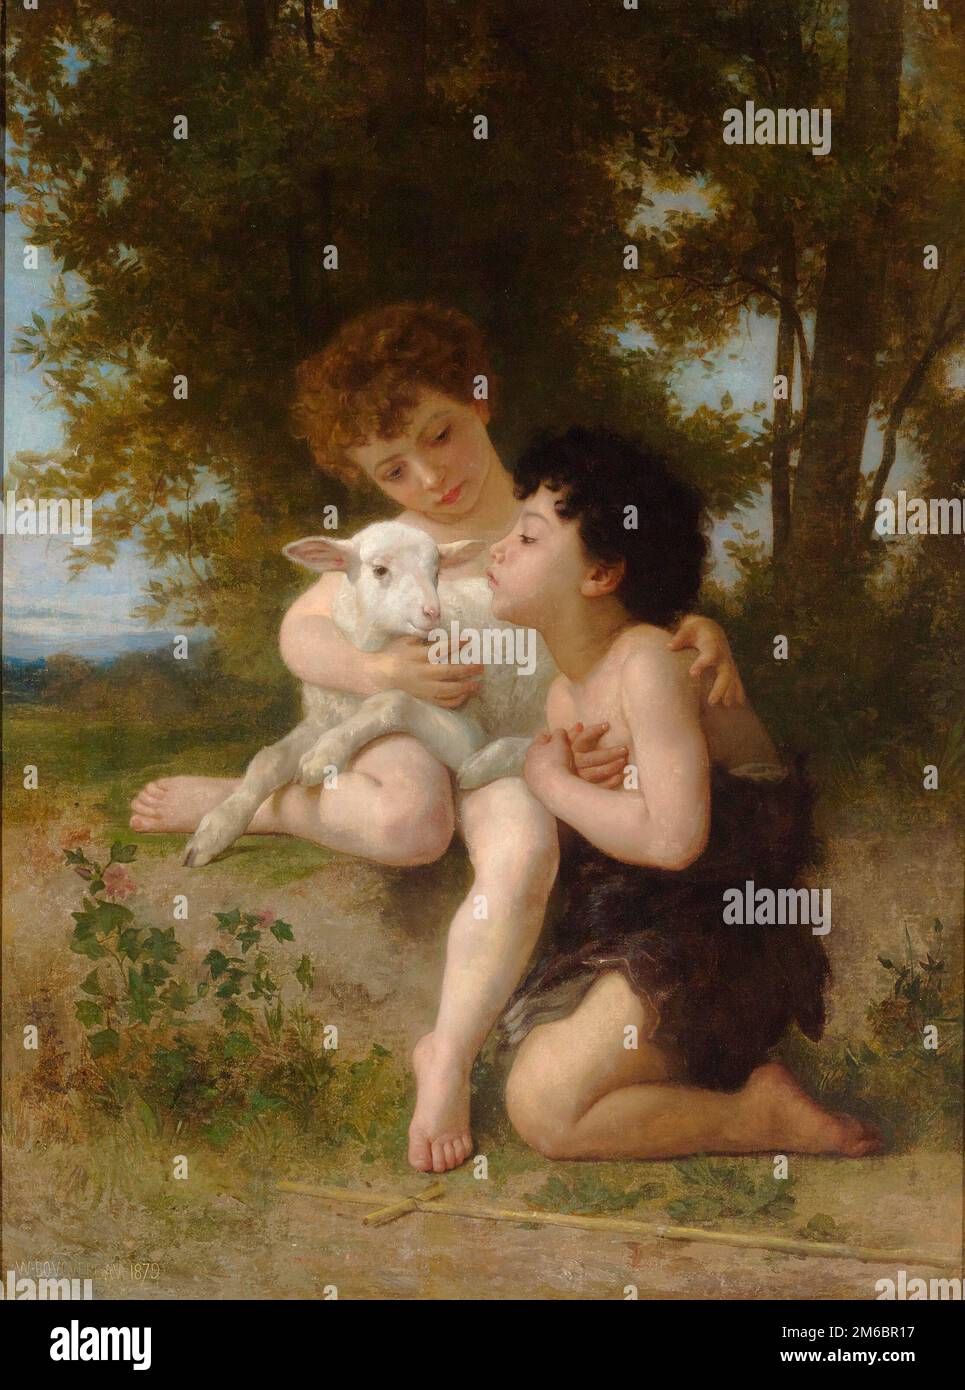 Les enfants à l'Agneau (enfants avec l'Agneau) peints par le peintre français du XIXe siècle William-Adolphe Bouguereau en 1879 Banque D'Images